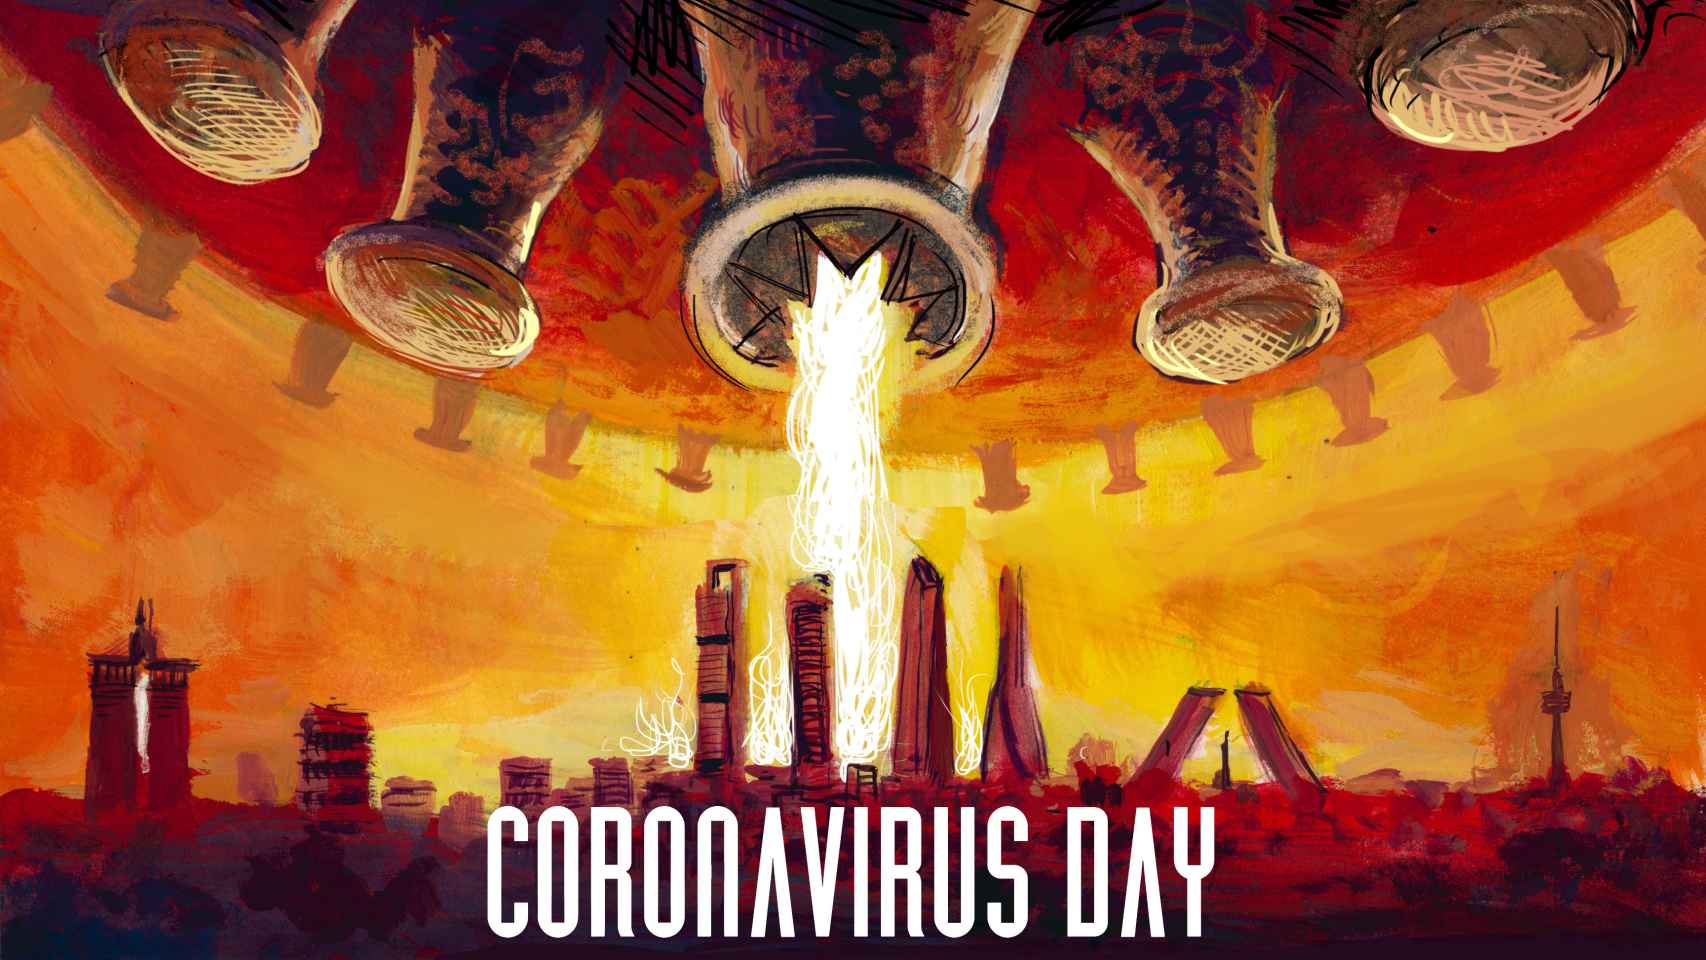 Coronavirus day